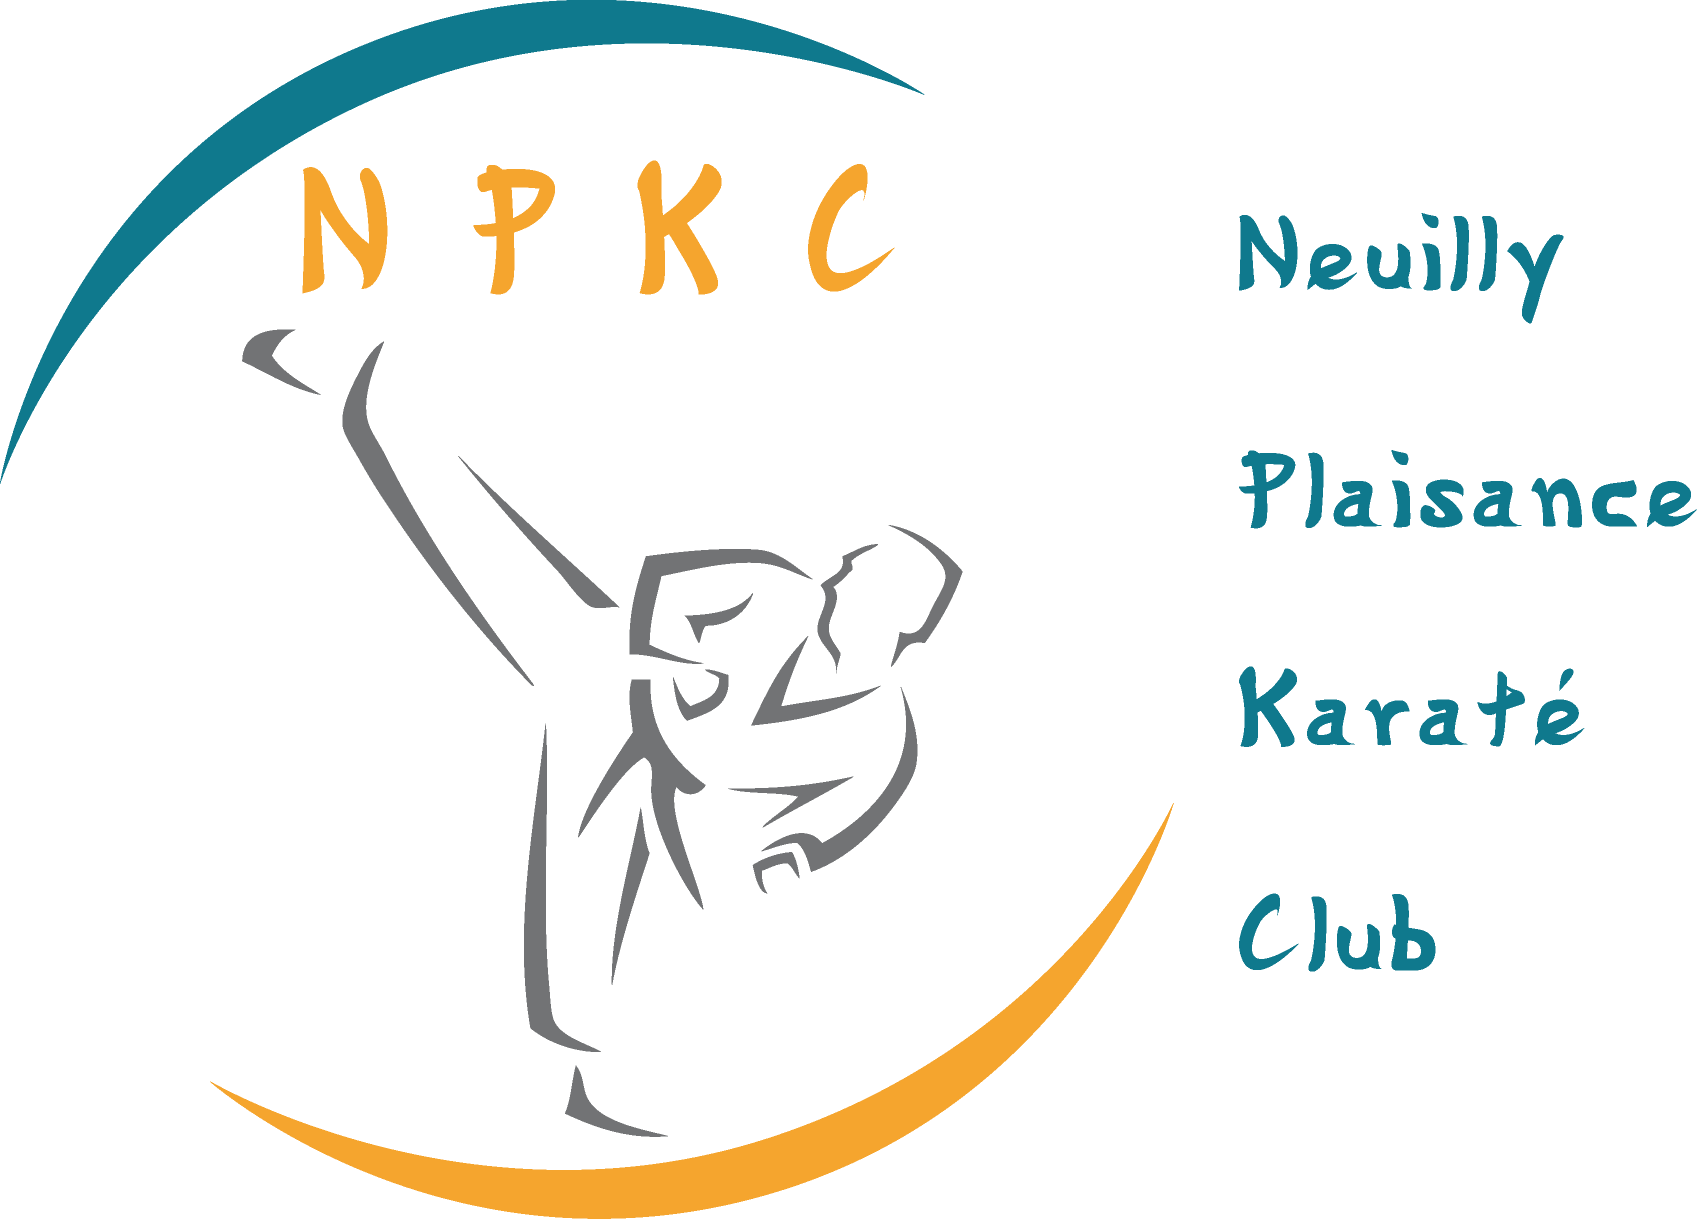 Neuilly Plaisance Karaté Club NPKC